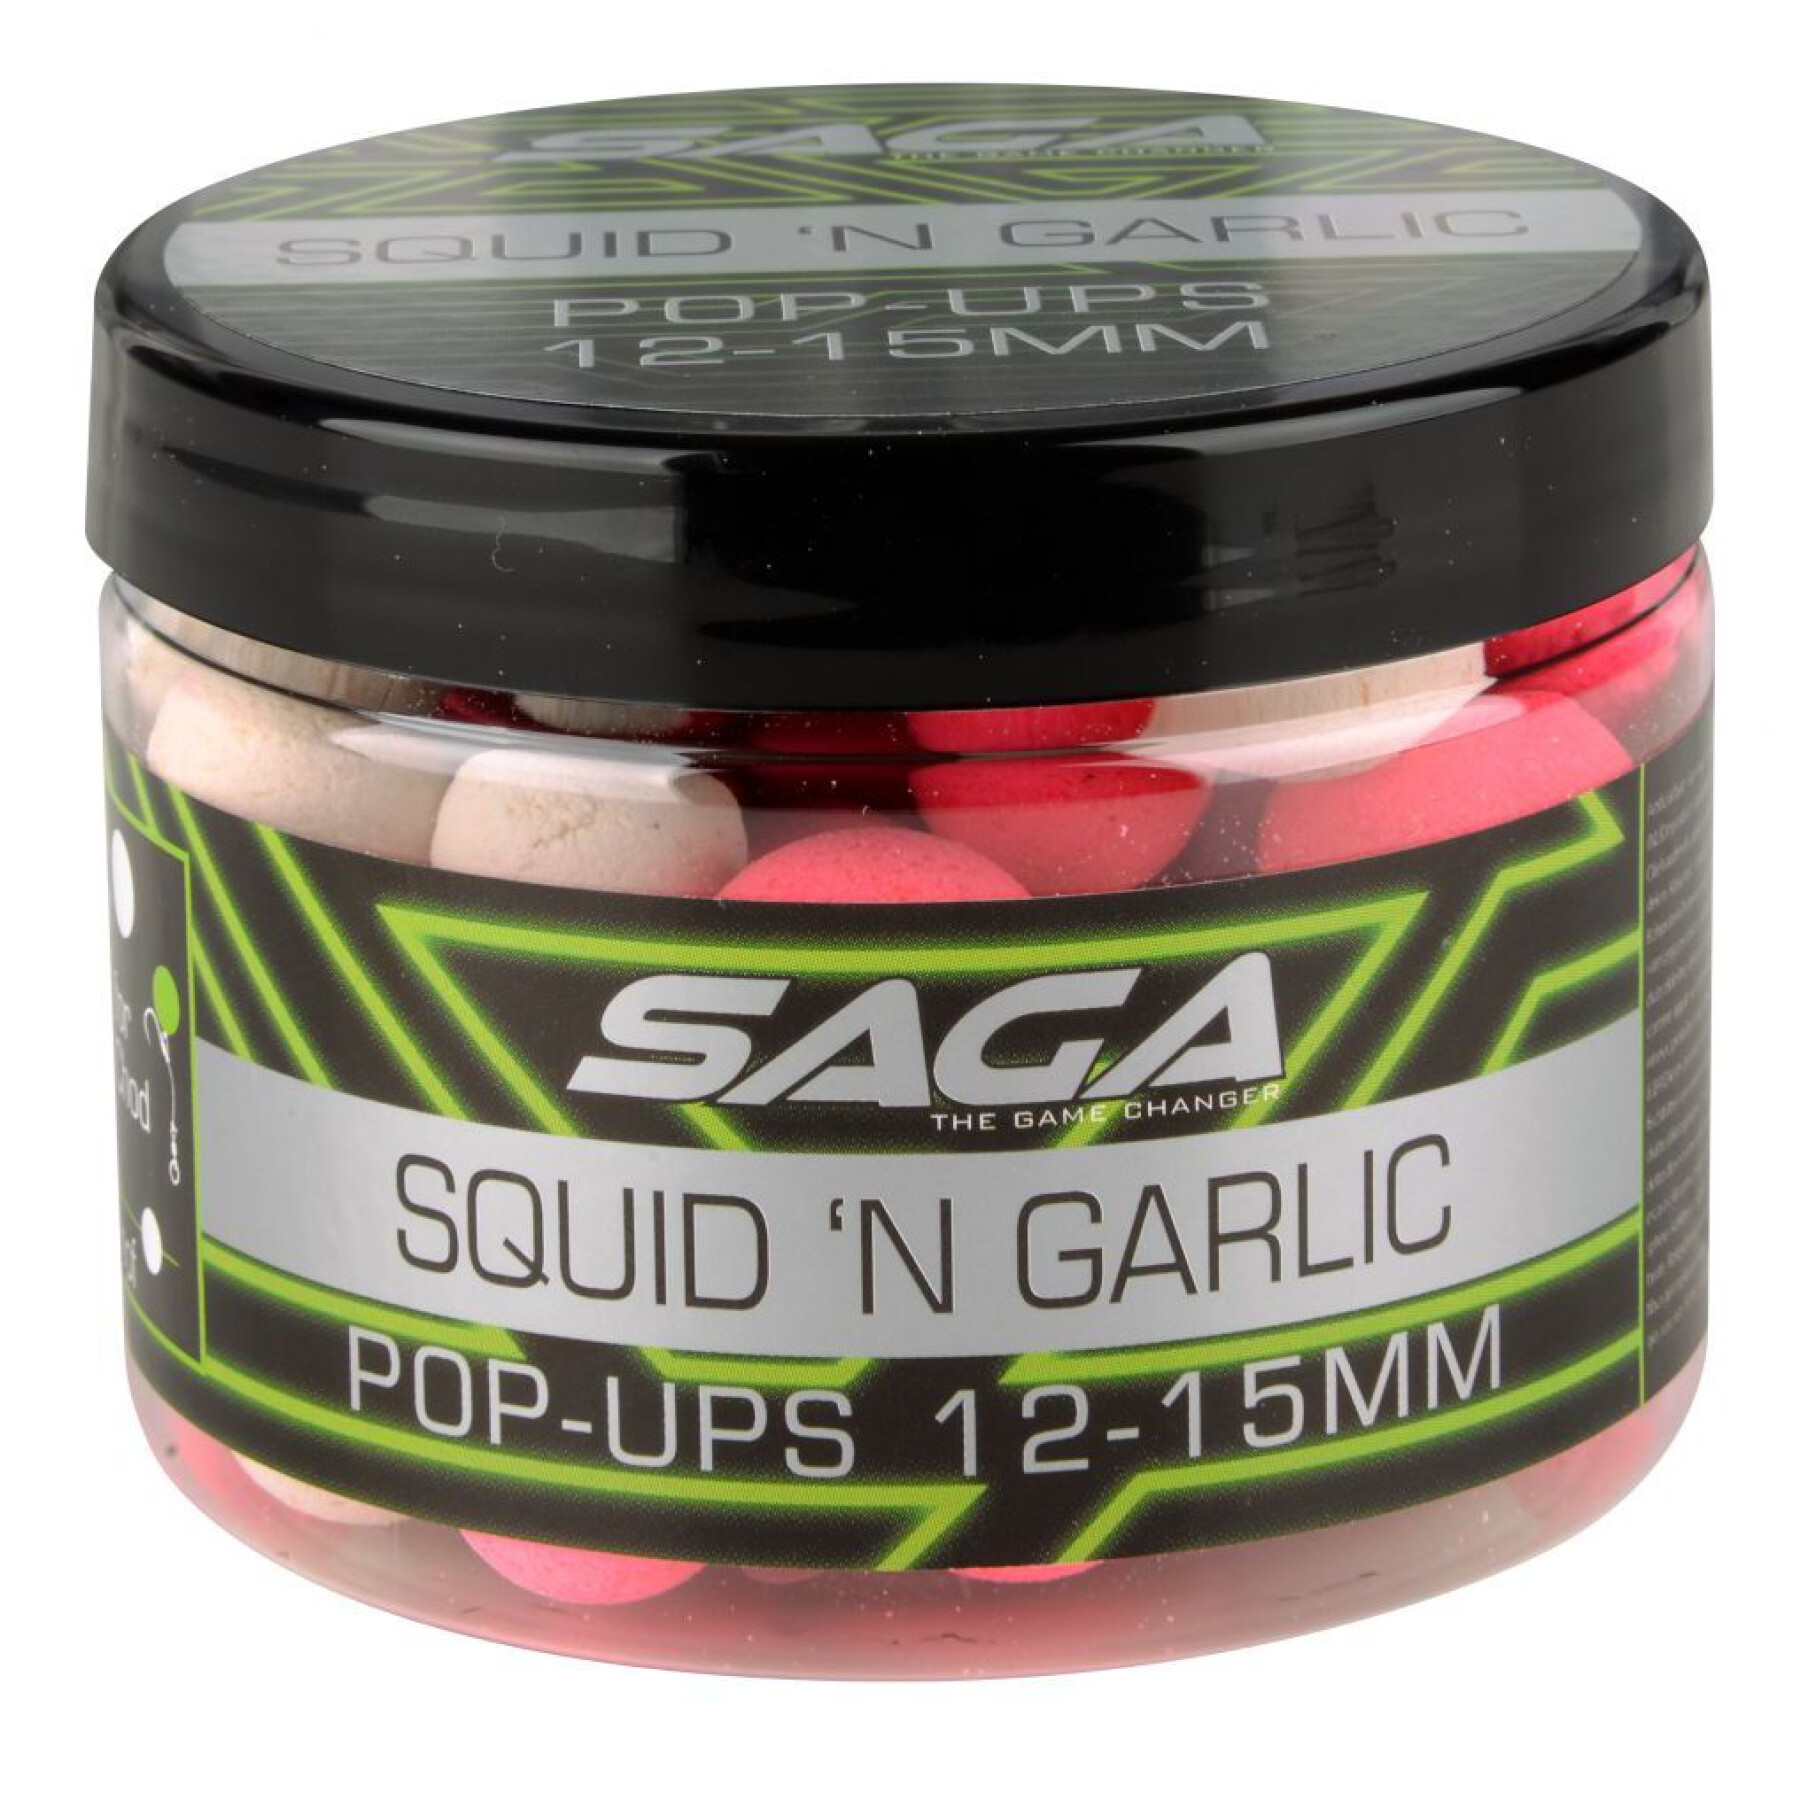 Pop-up Saga Squid & Garlic 50g